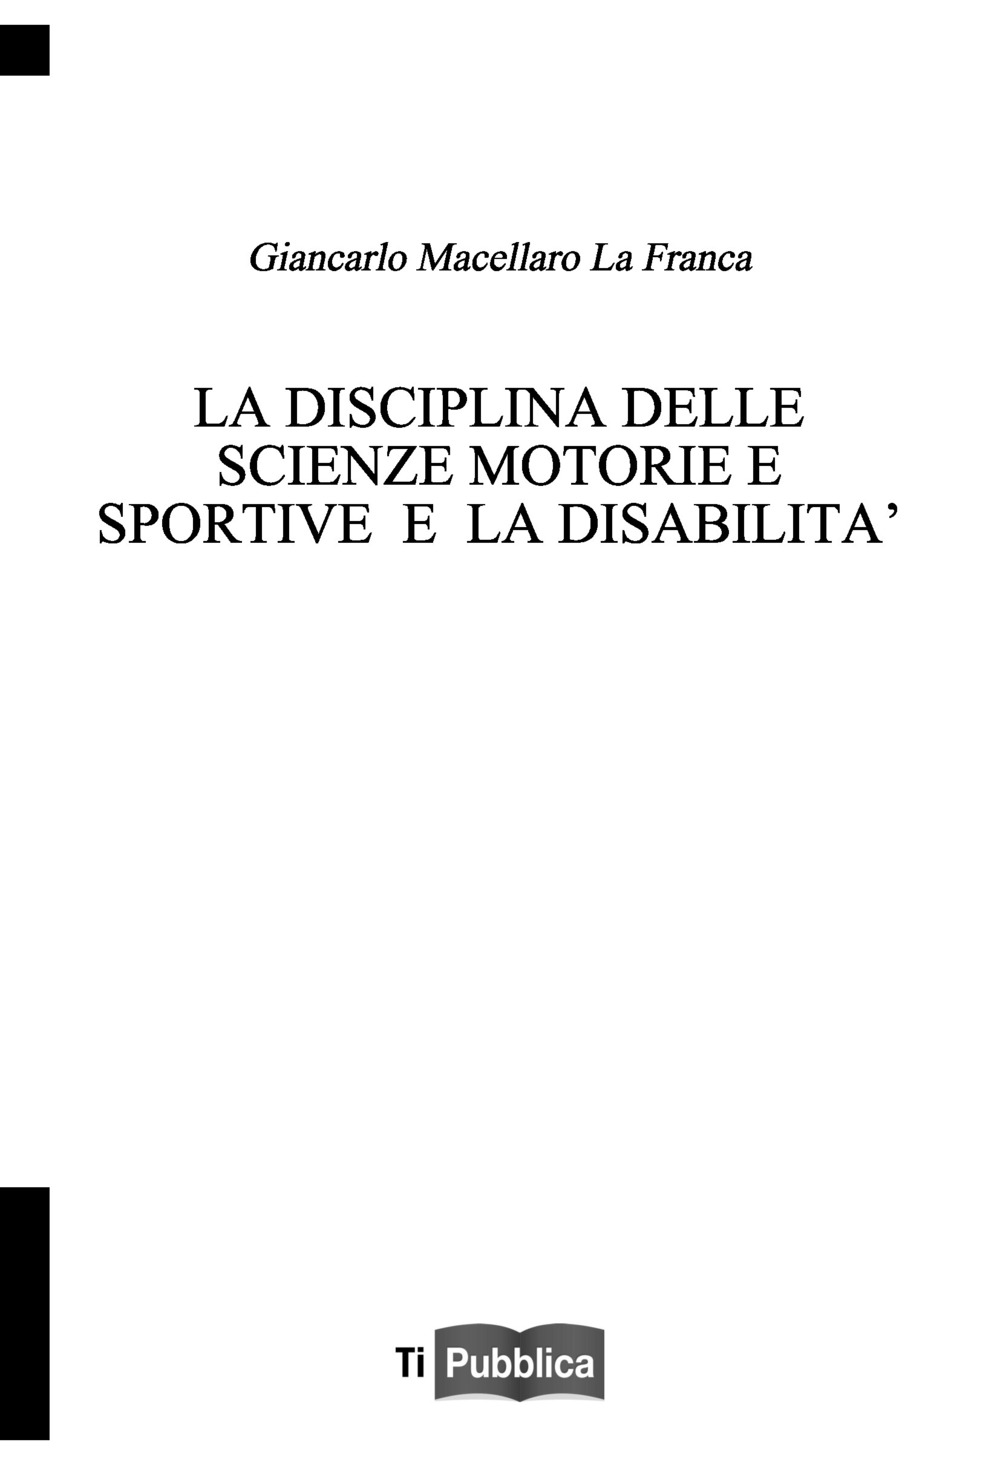 Image of La disciplina delle scienze motorie e sportive e la disabilità